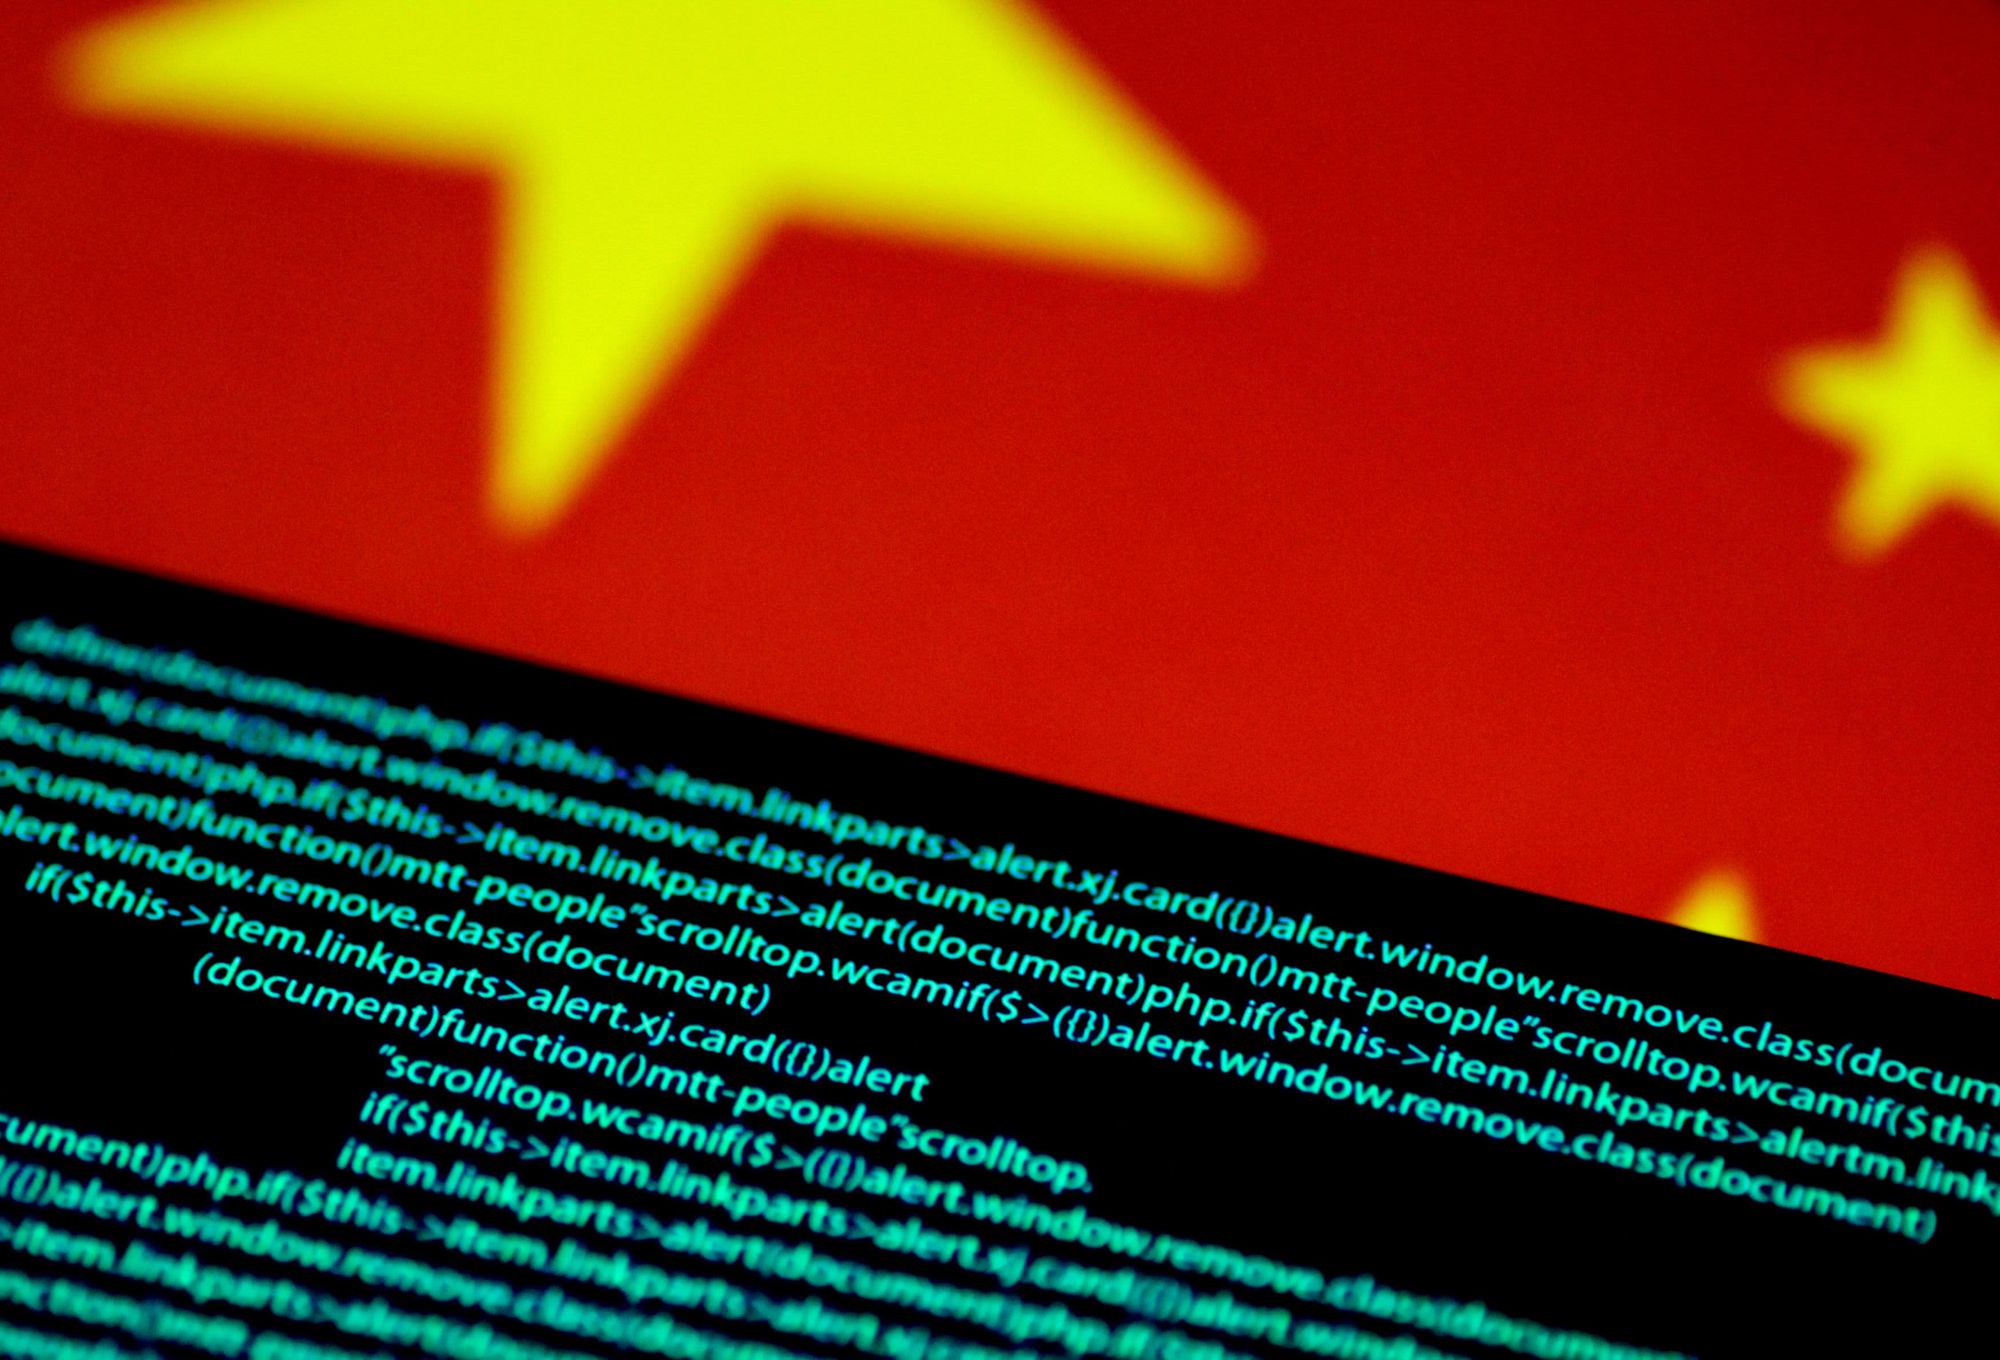 Các gã khổng lồ công nghệ Trung Quốc đã chia sẻ chi tiết về các thuật toán được đánh giá cao của họ với các cơ quan quản lý của nước này trong một động thái chưa từng có, khi Bắc Kinh tìm kiếm sự giám sát nhiều hơn đối với lĩnh vực internet trong nước. Ảnh: @AFP.